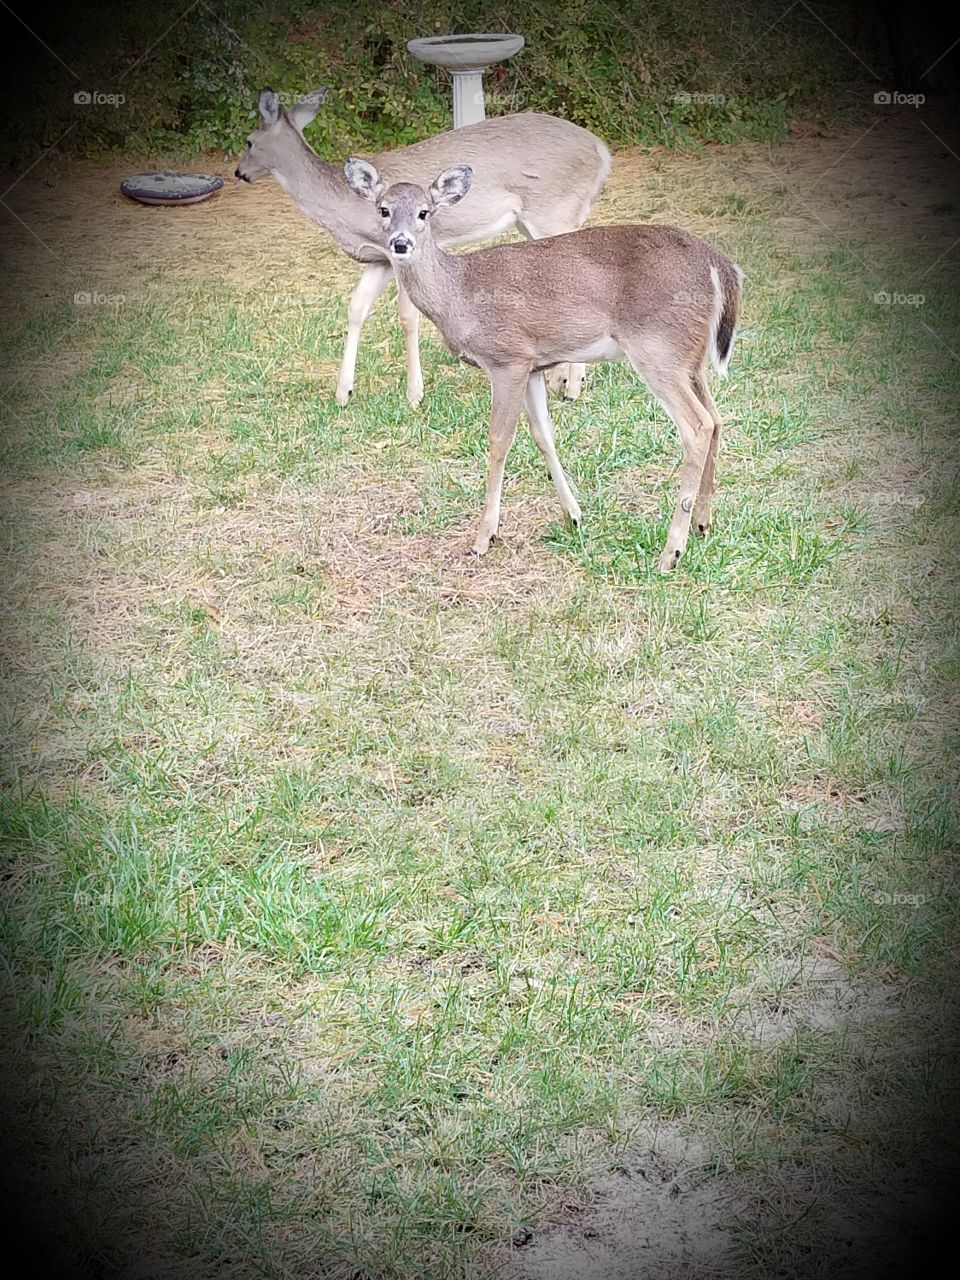 My backyard deer